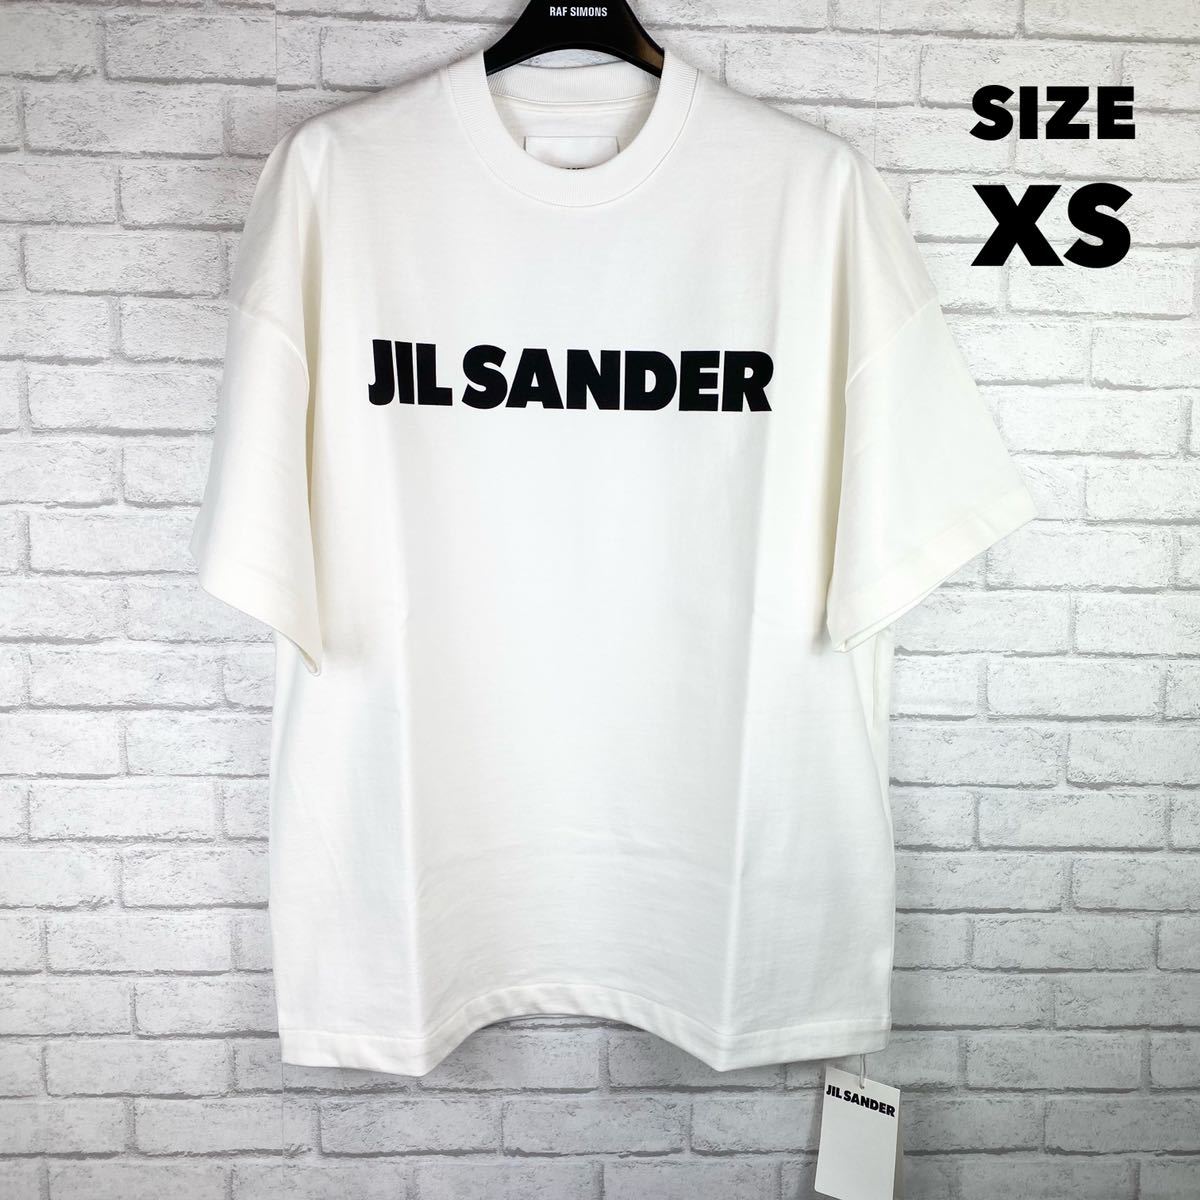 国内正規品】 【新品】JIL XS ジルサンダー Tシャツ ロゴ SANDER - 半袖 - www.comisariatolosandes.com